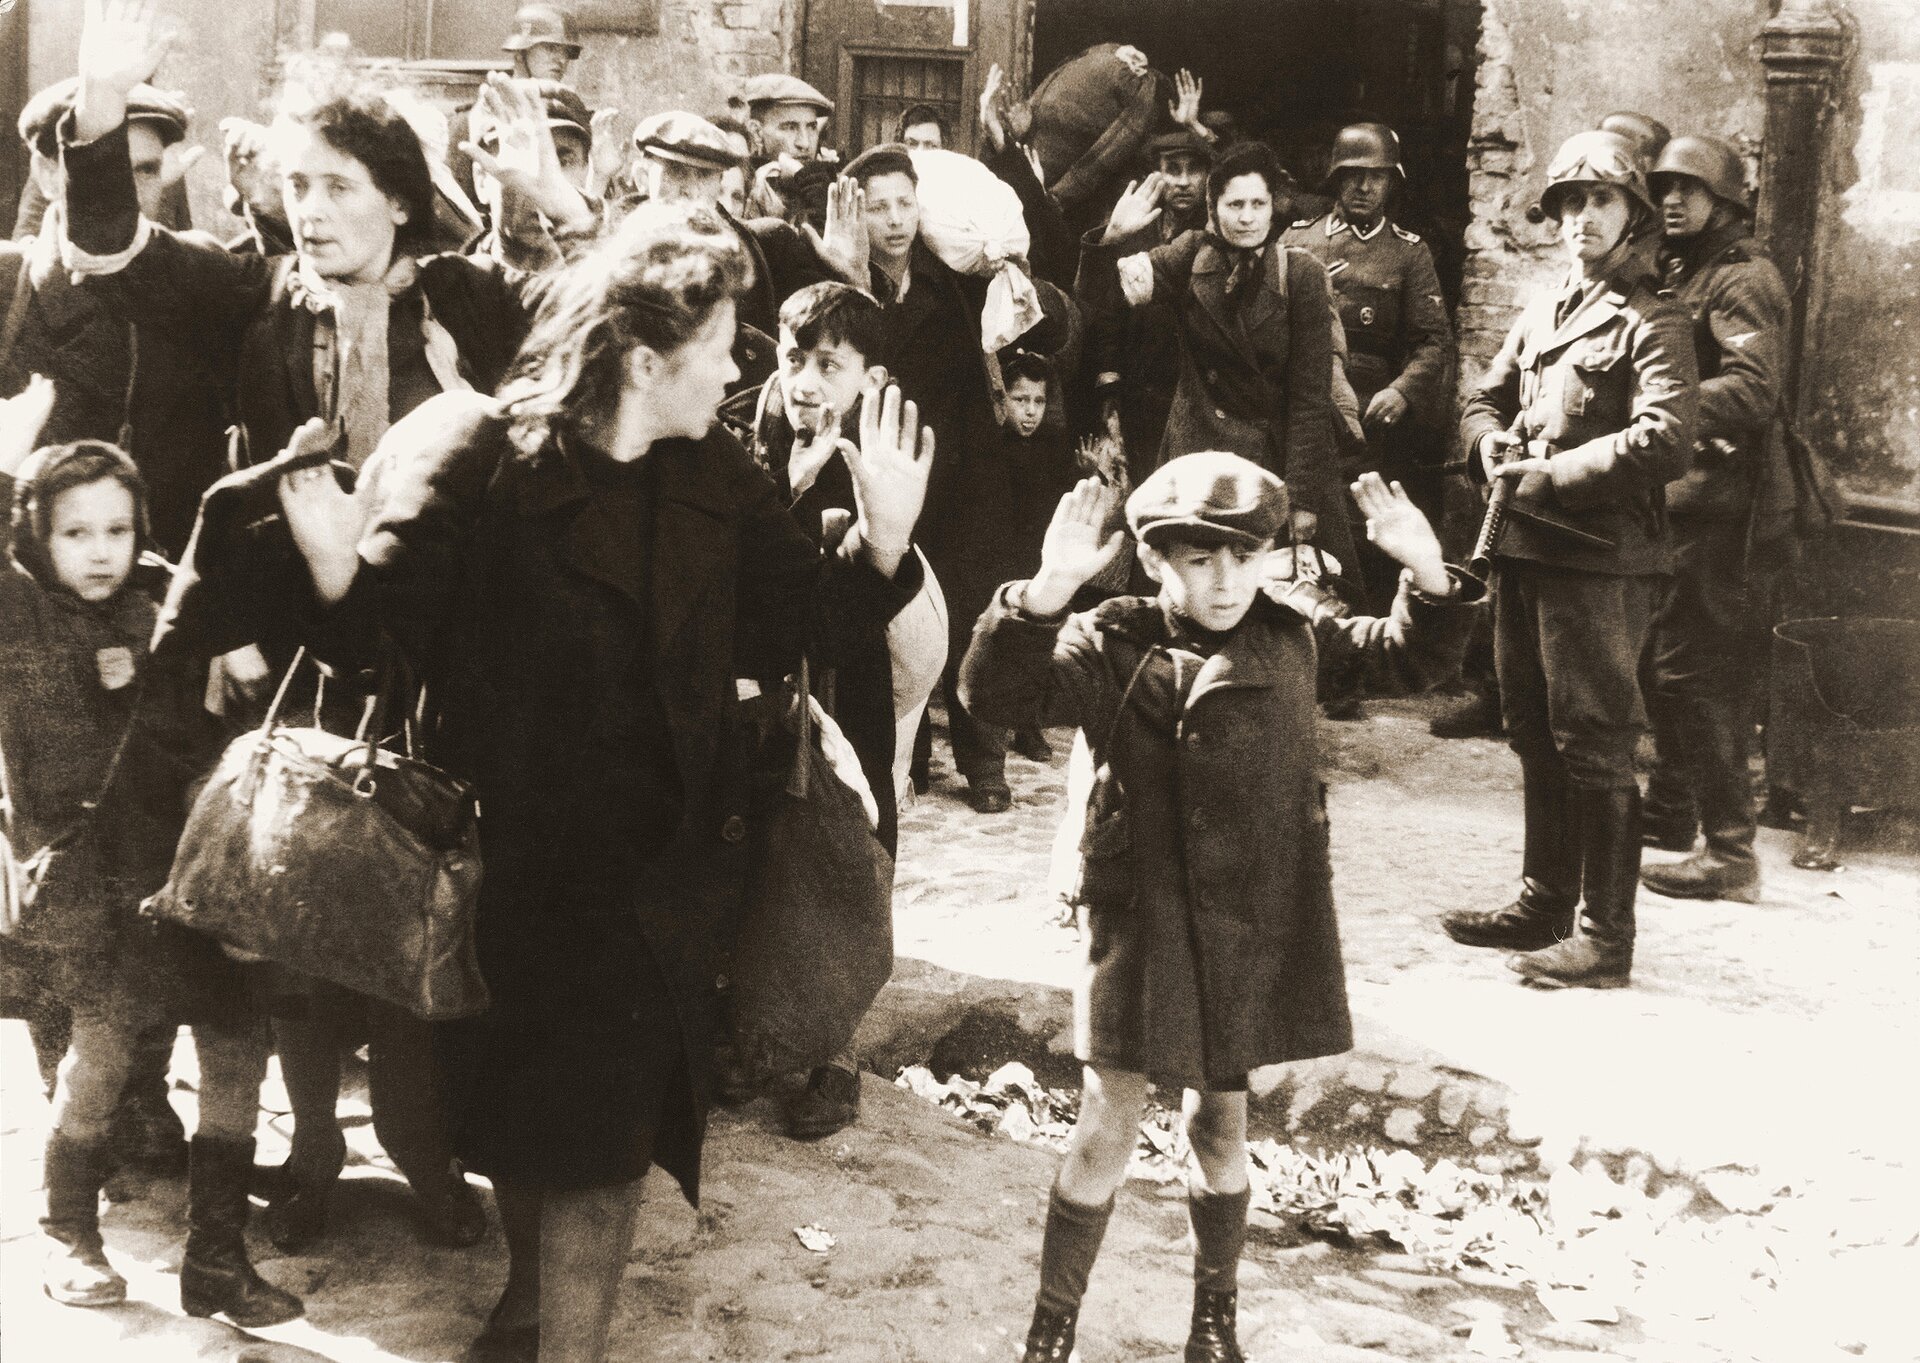 Z bramy budynku wychodzi grupa osób z podniesionymi dłońmi. W grupie są kobiety i dzieci. Obserwują ich uzbrojeni żołnierze niemieccy. Jeden z nich ma skierowaną broń w stronę chłopca.